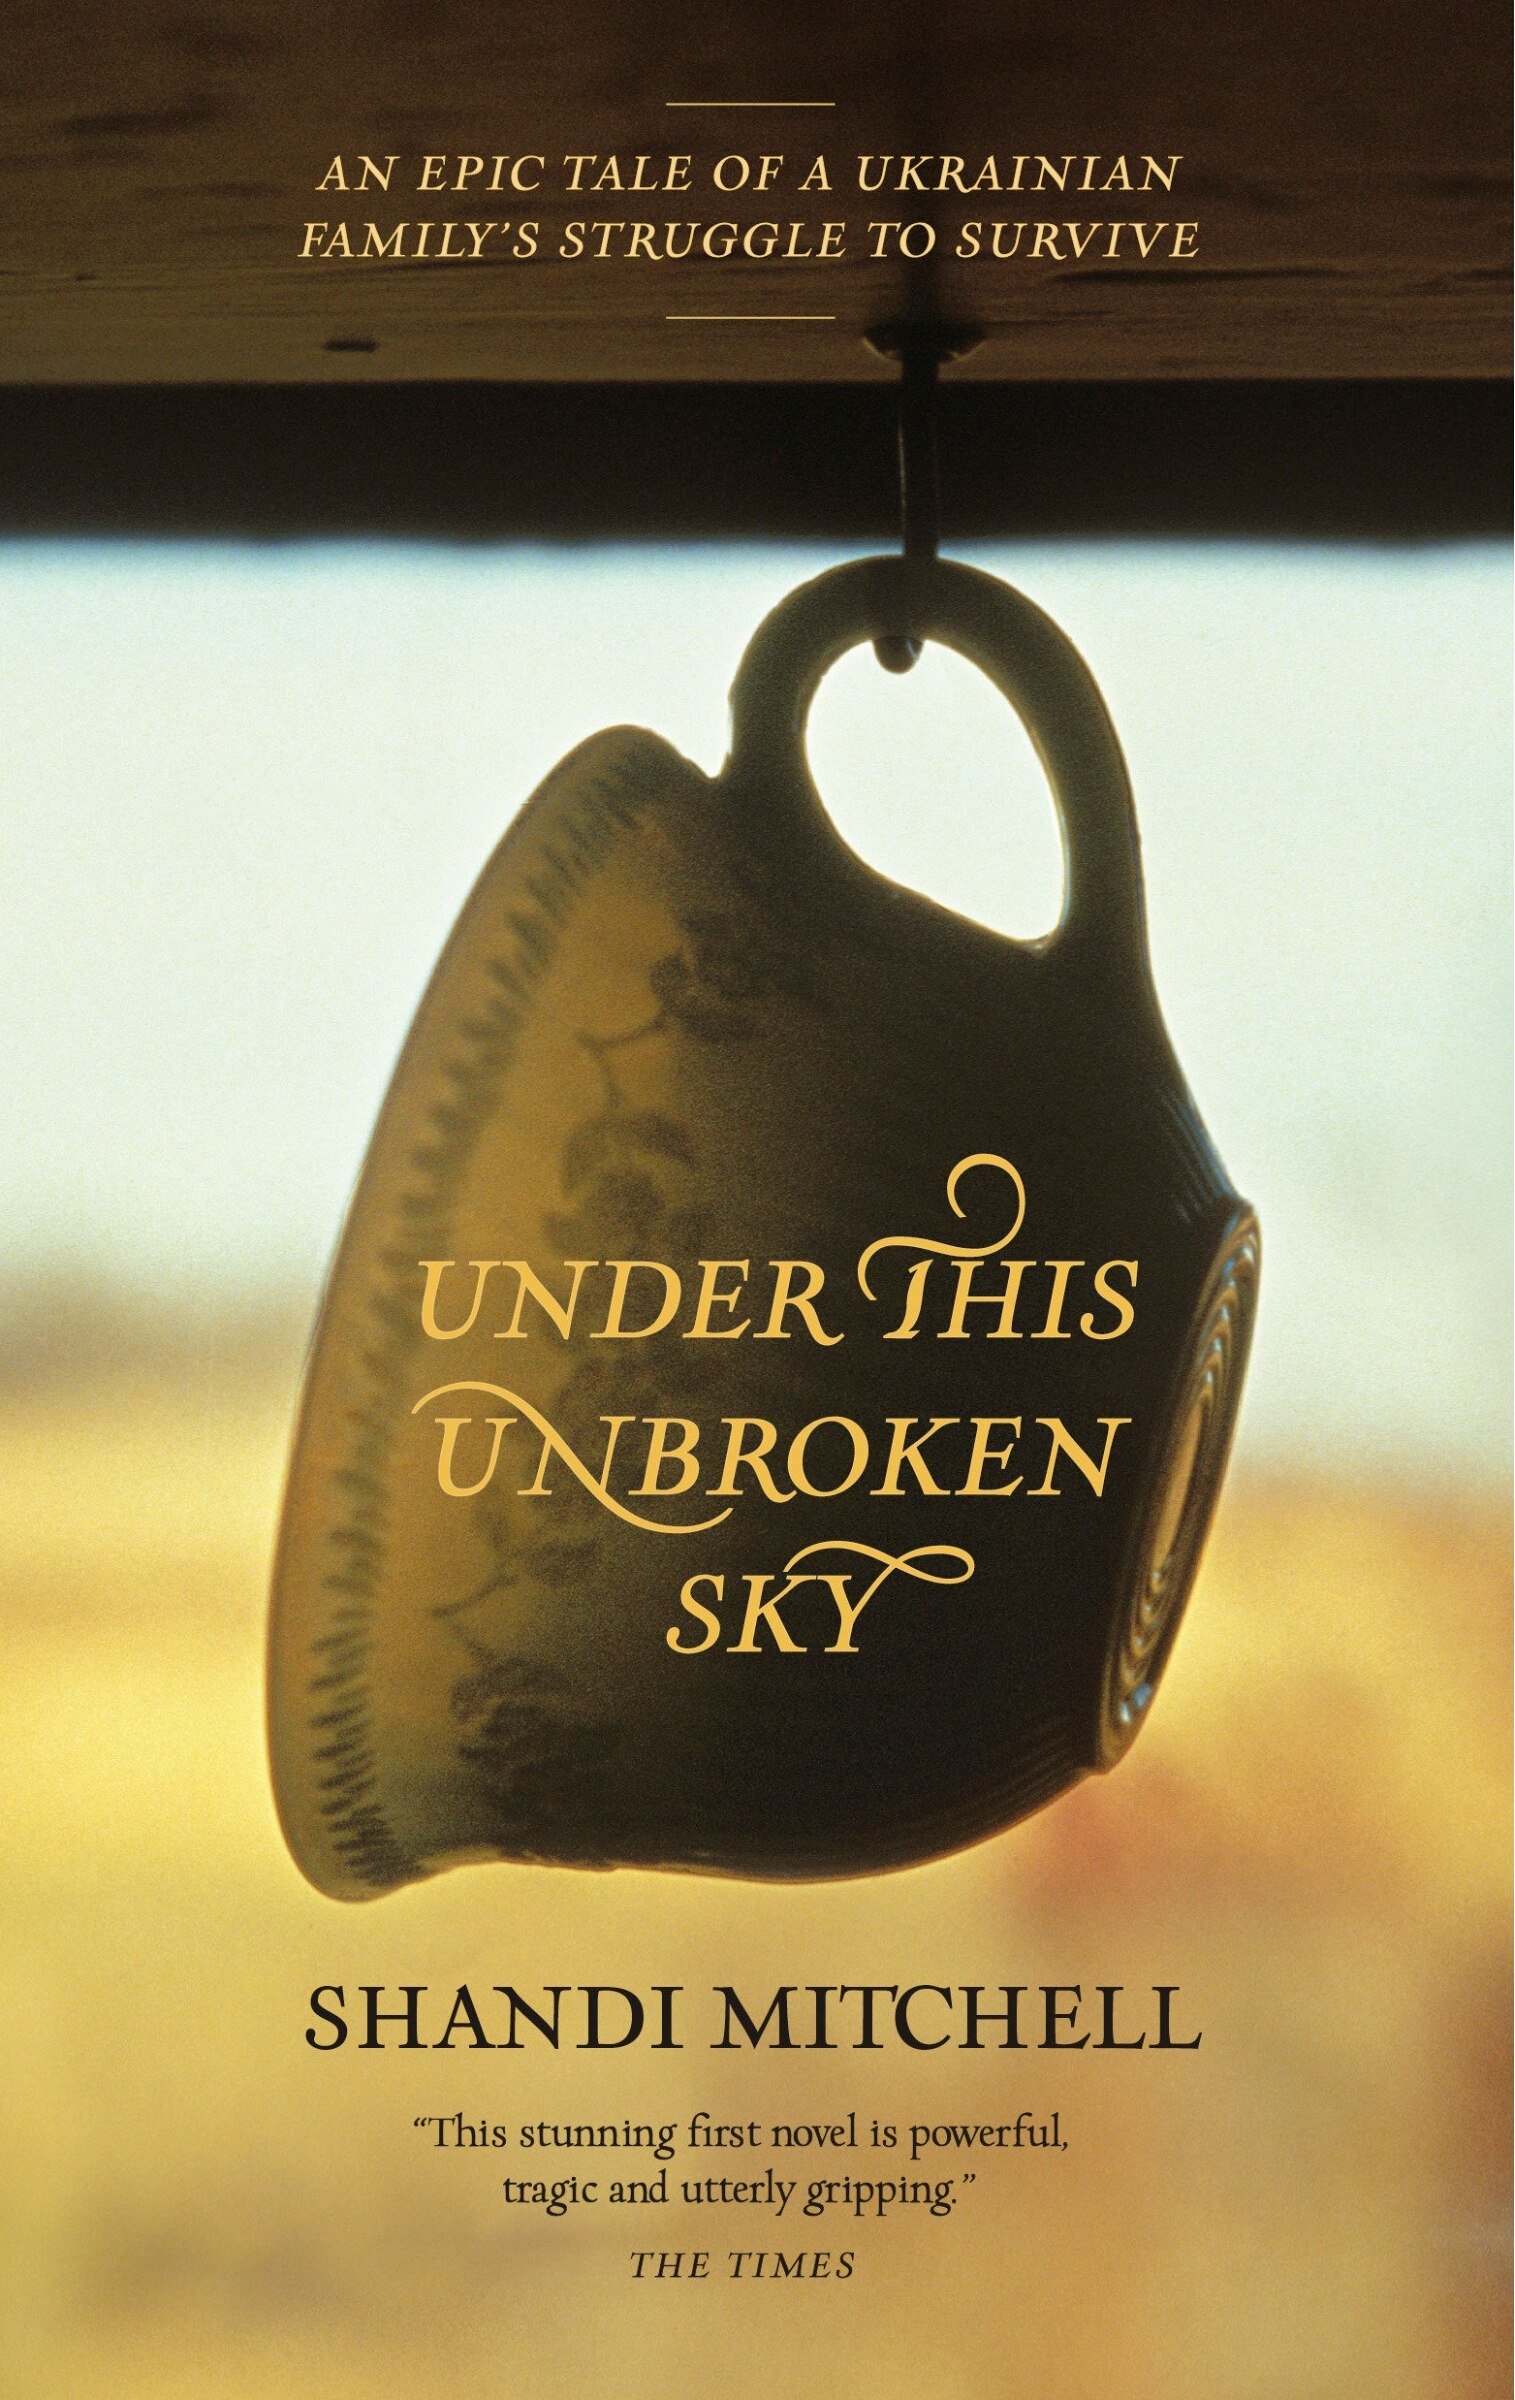 Mitchell, Shandi - Under This Unbroken Sky - cover.jpg